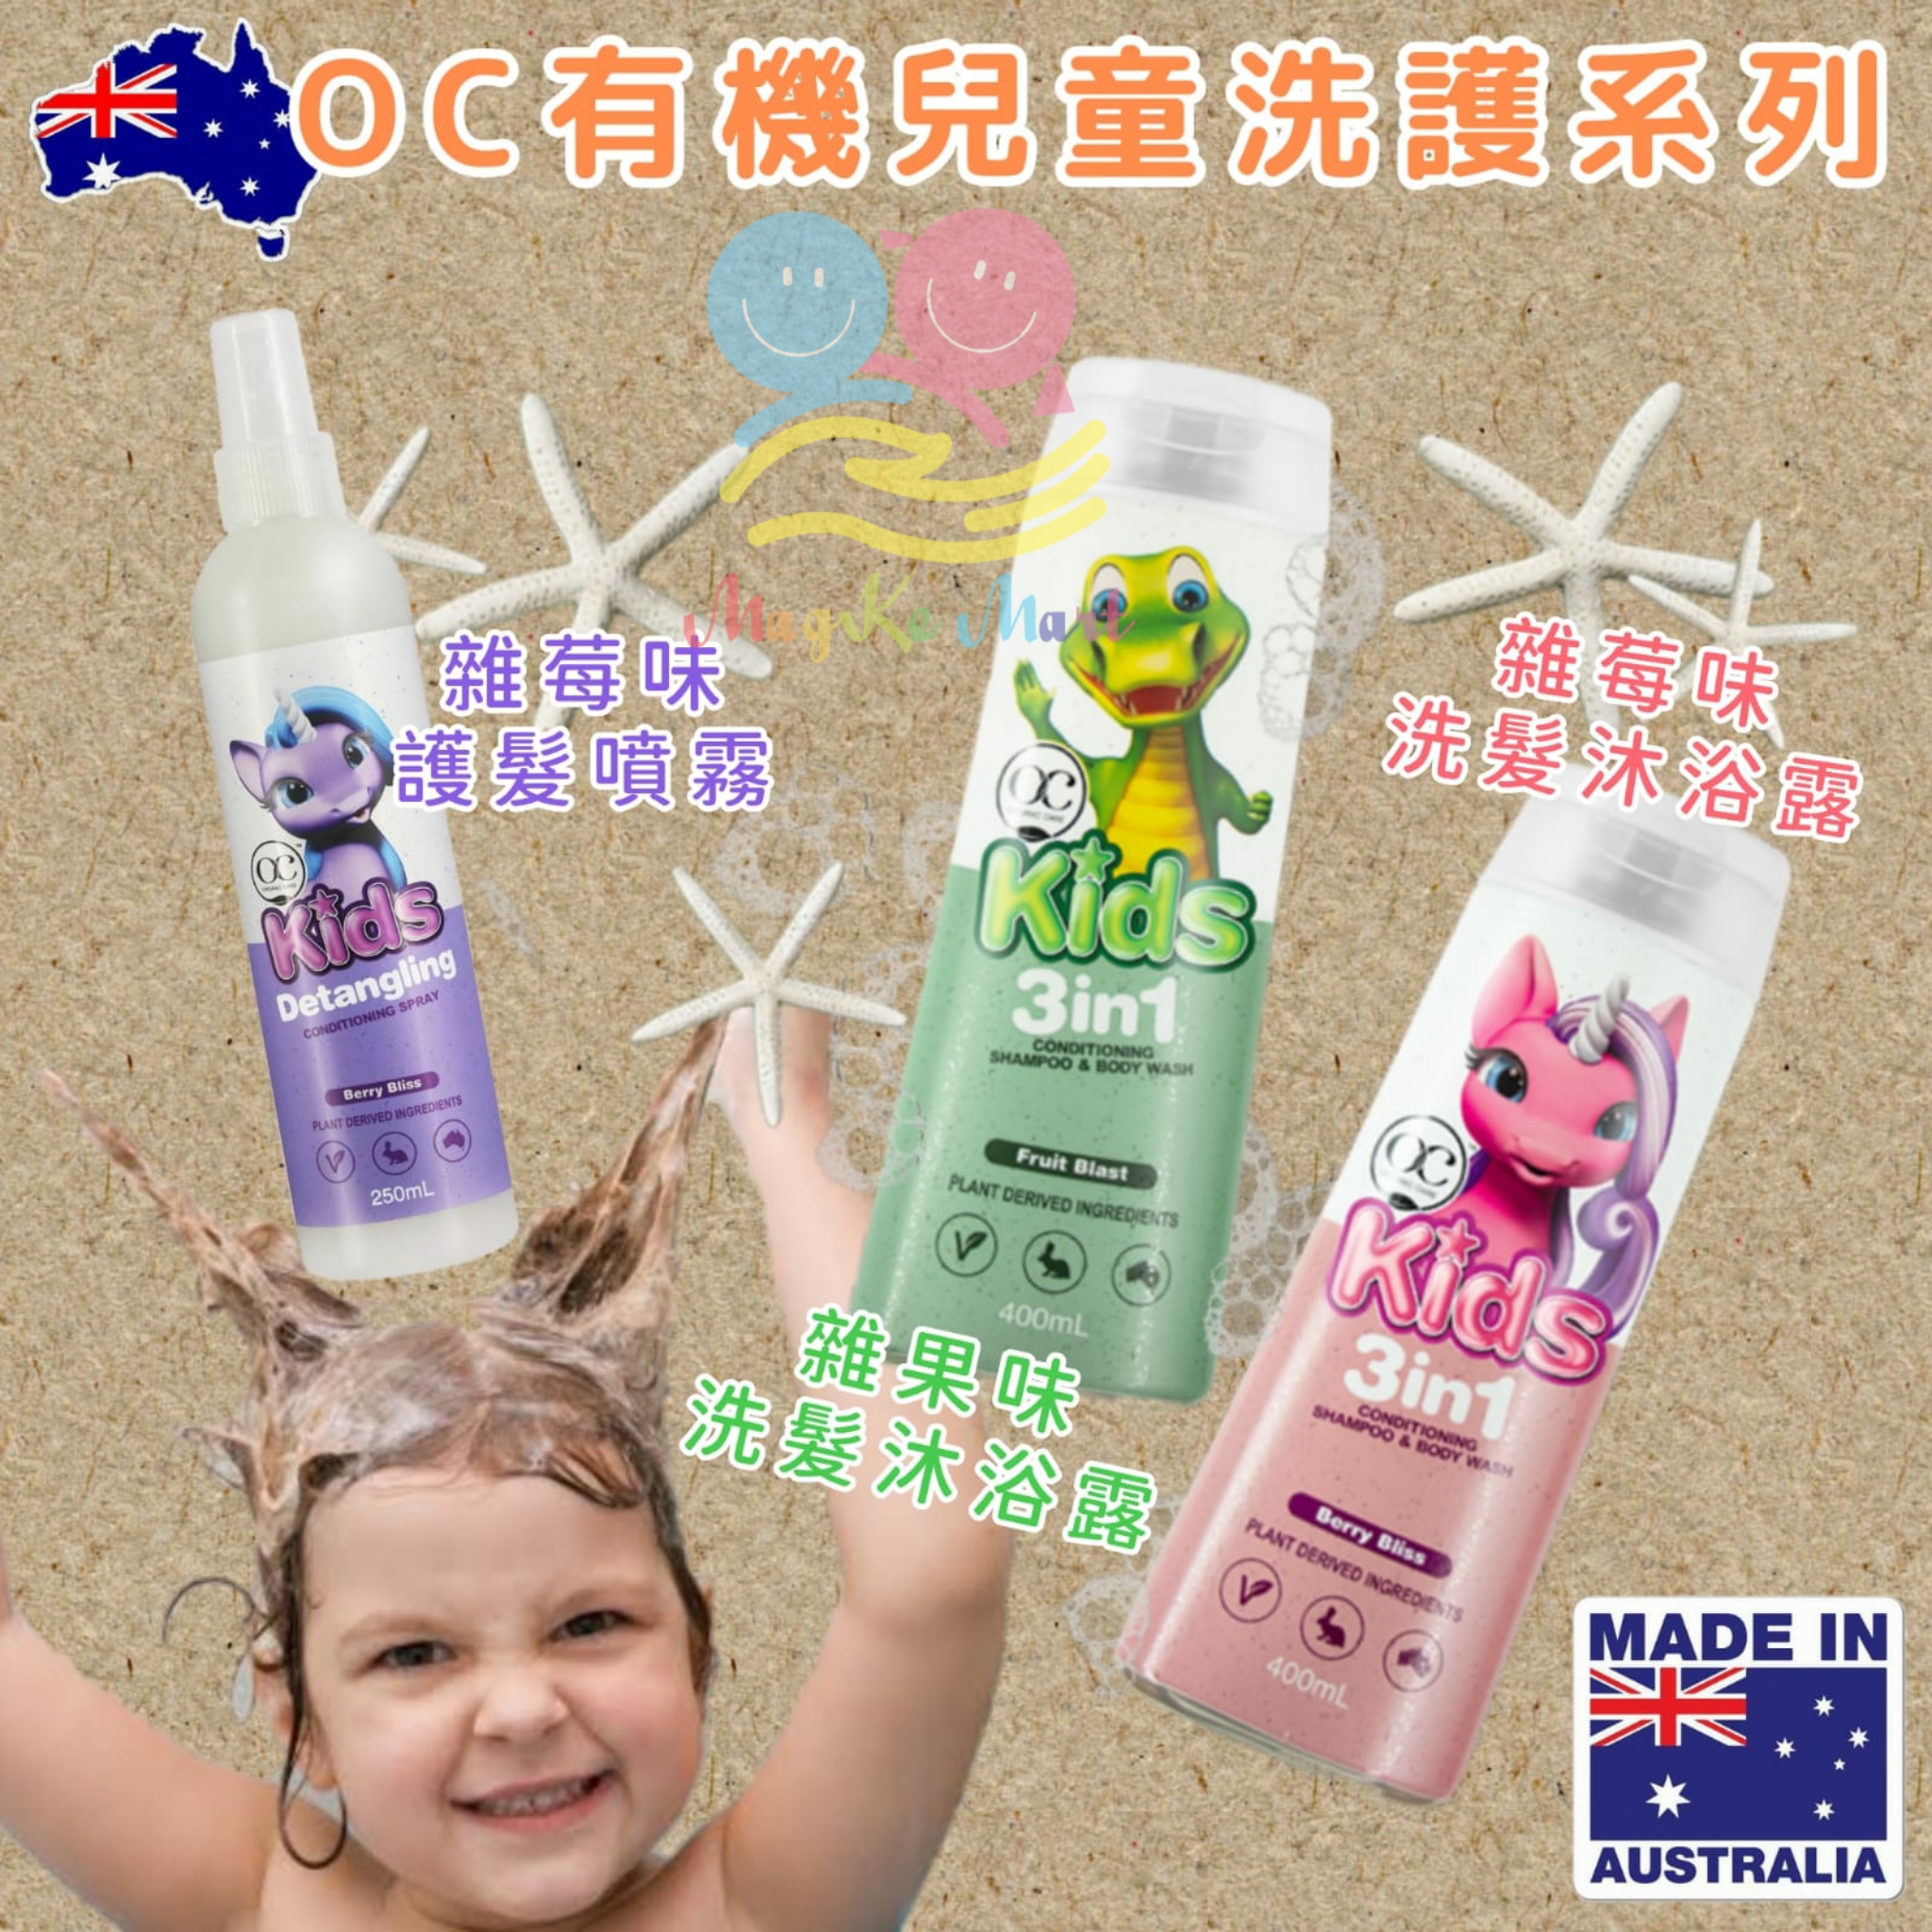 澳洲 OC 兒童專用有機洗護系列